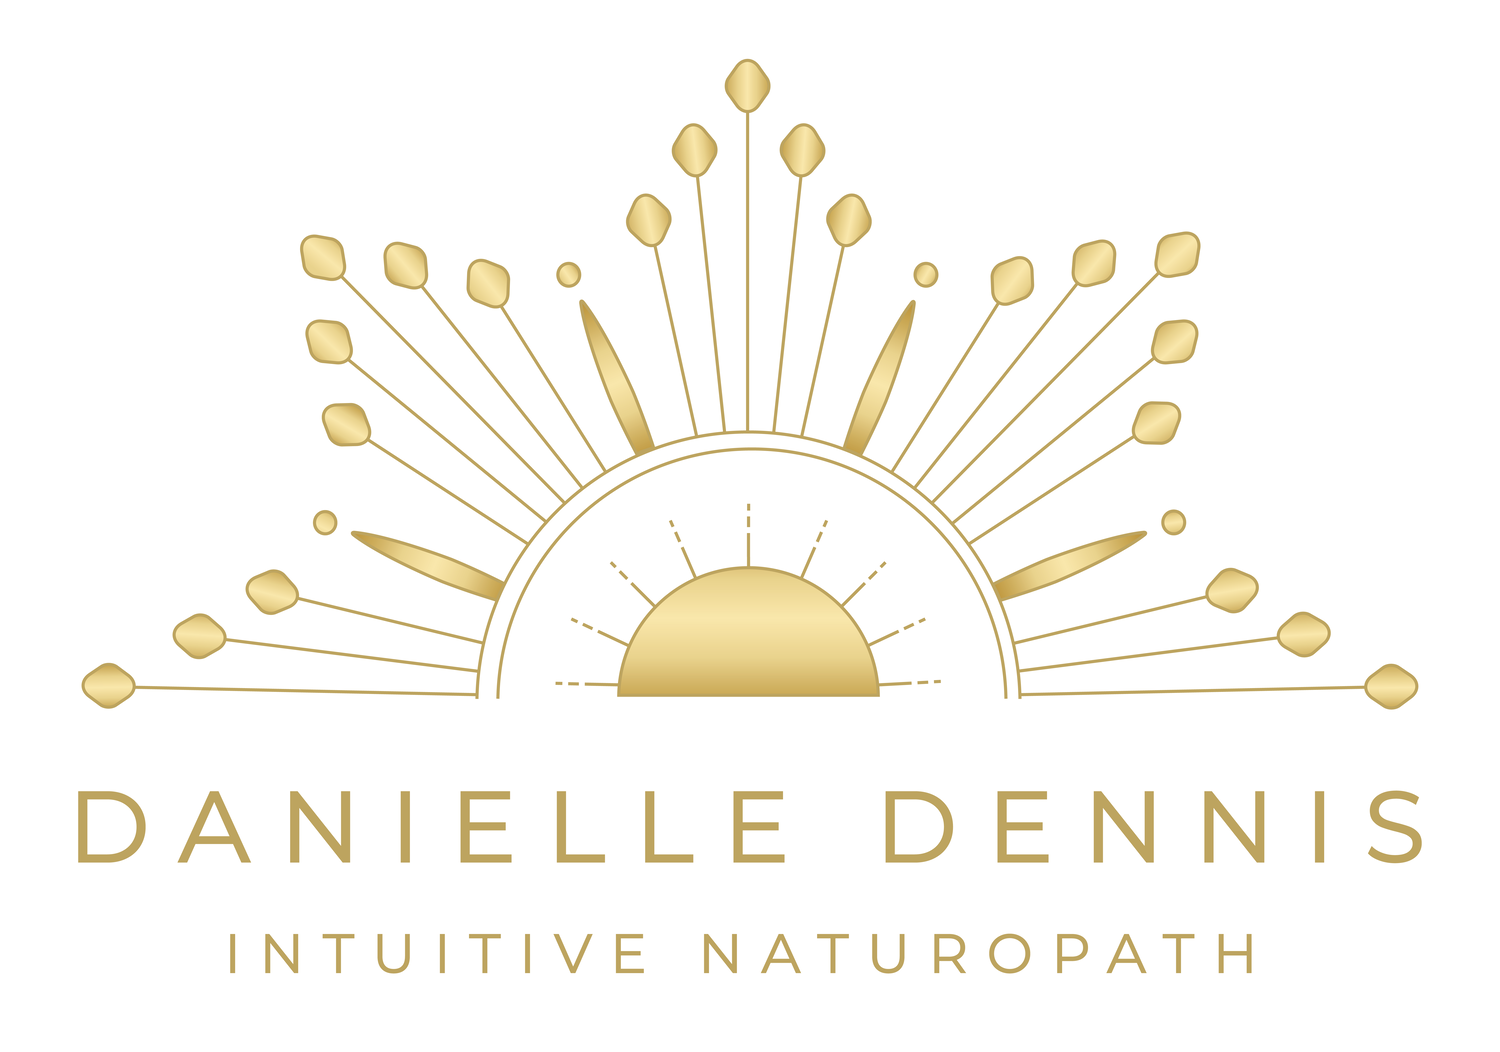 Danielle Dennis Naturopath